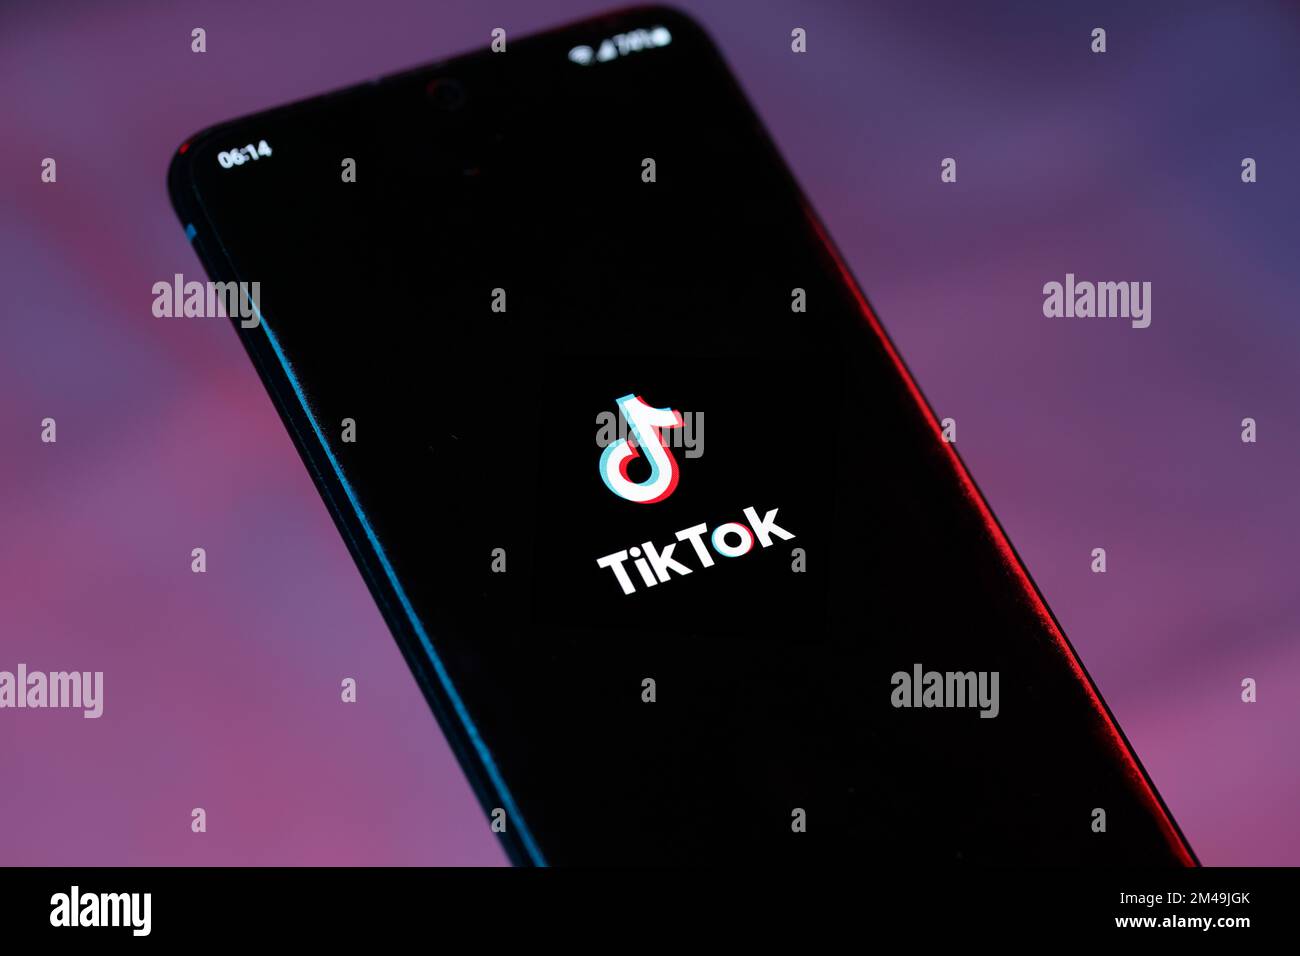 Le logo TikTok sur un smartphone. TikTok est une compagnie de médias sociaux de forme courte par ByteDance. Banque D'Images